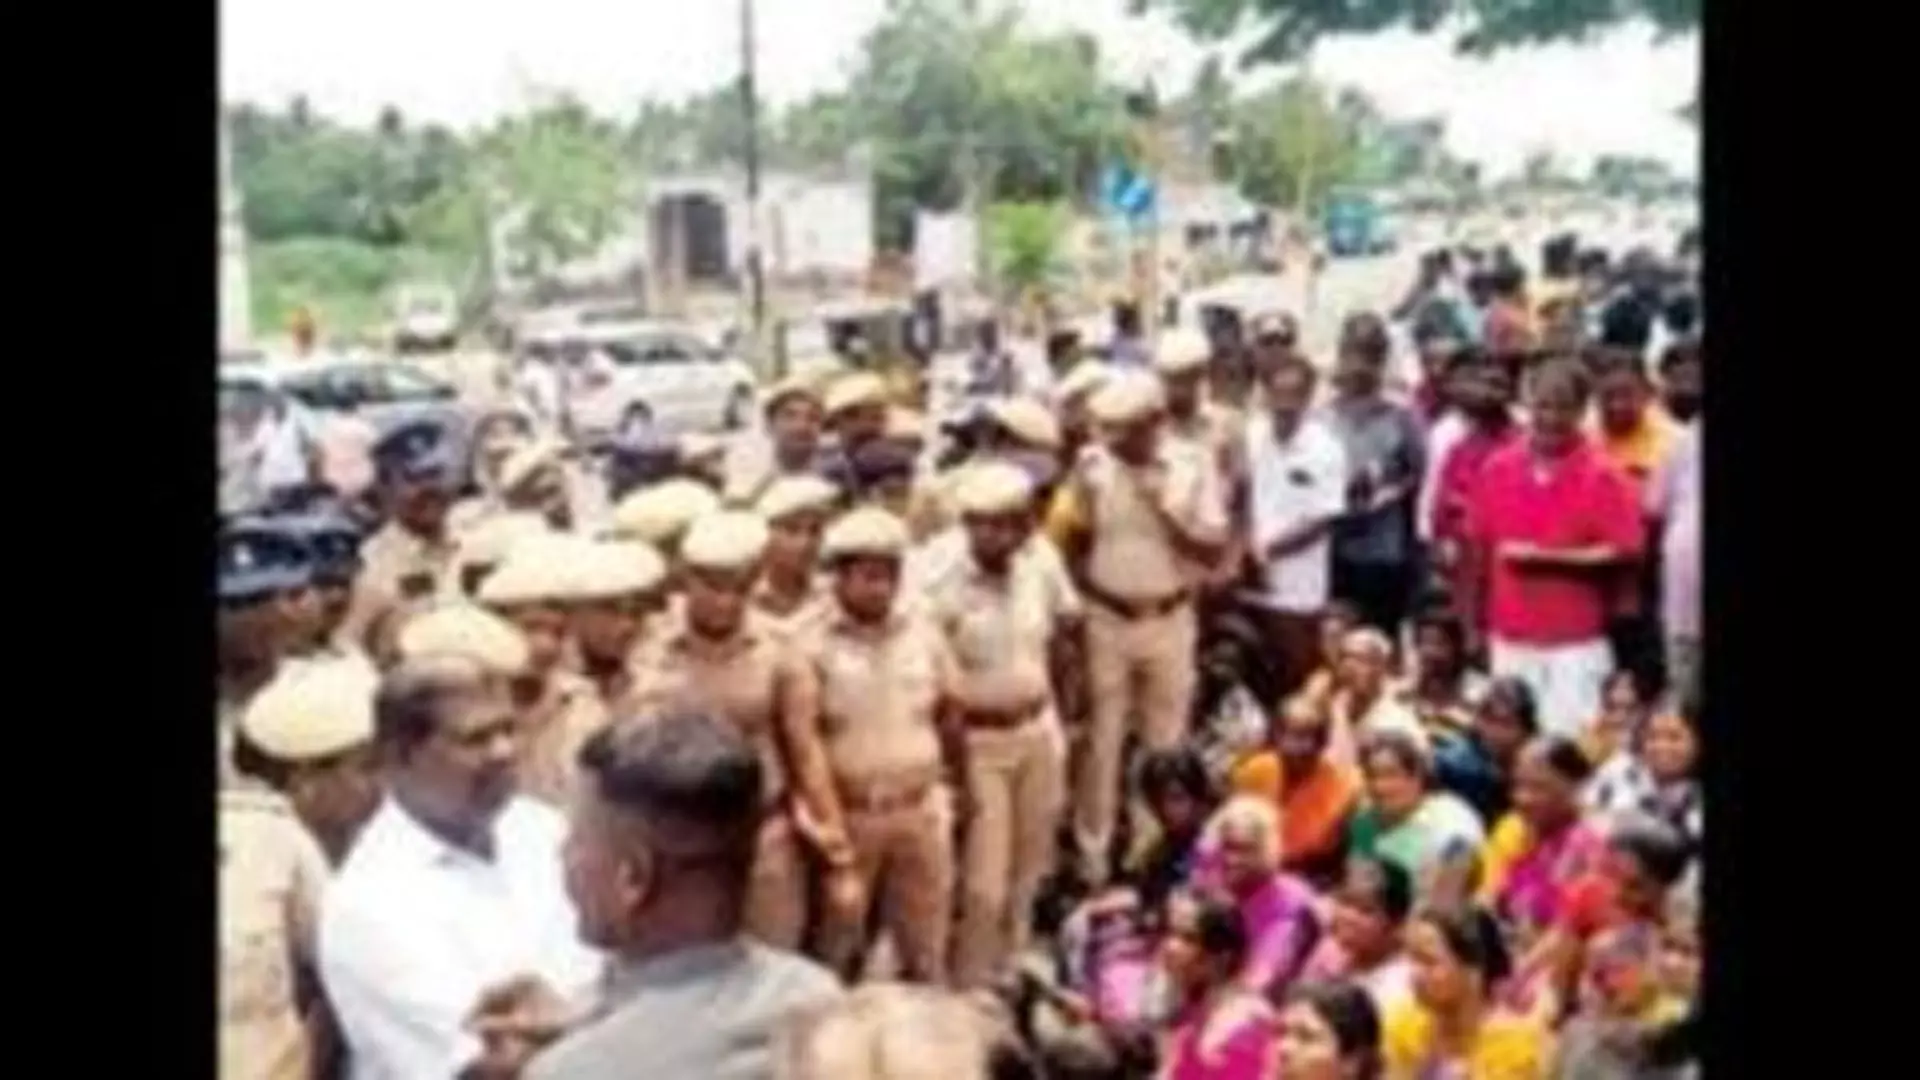 Tamil Nadu News : कल्लकुरिची शराब त्रासदी अवैध शराब गिरोहों के खिलाफ सख्त रुख पर जोर दिया